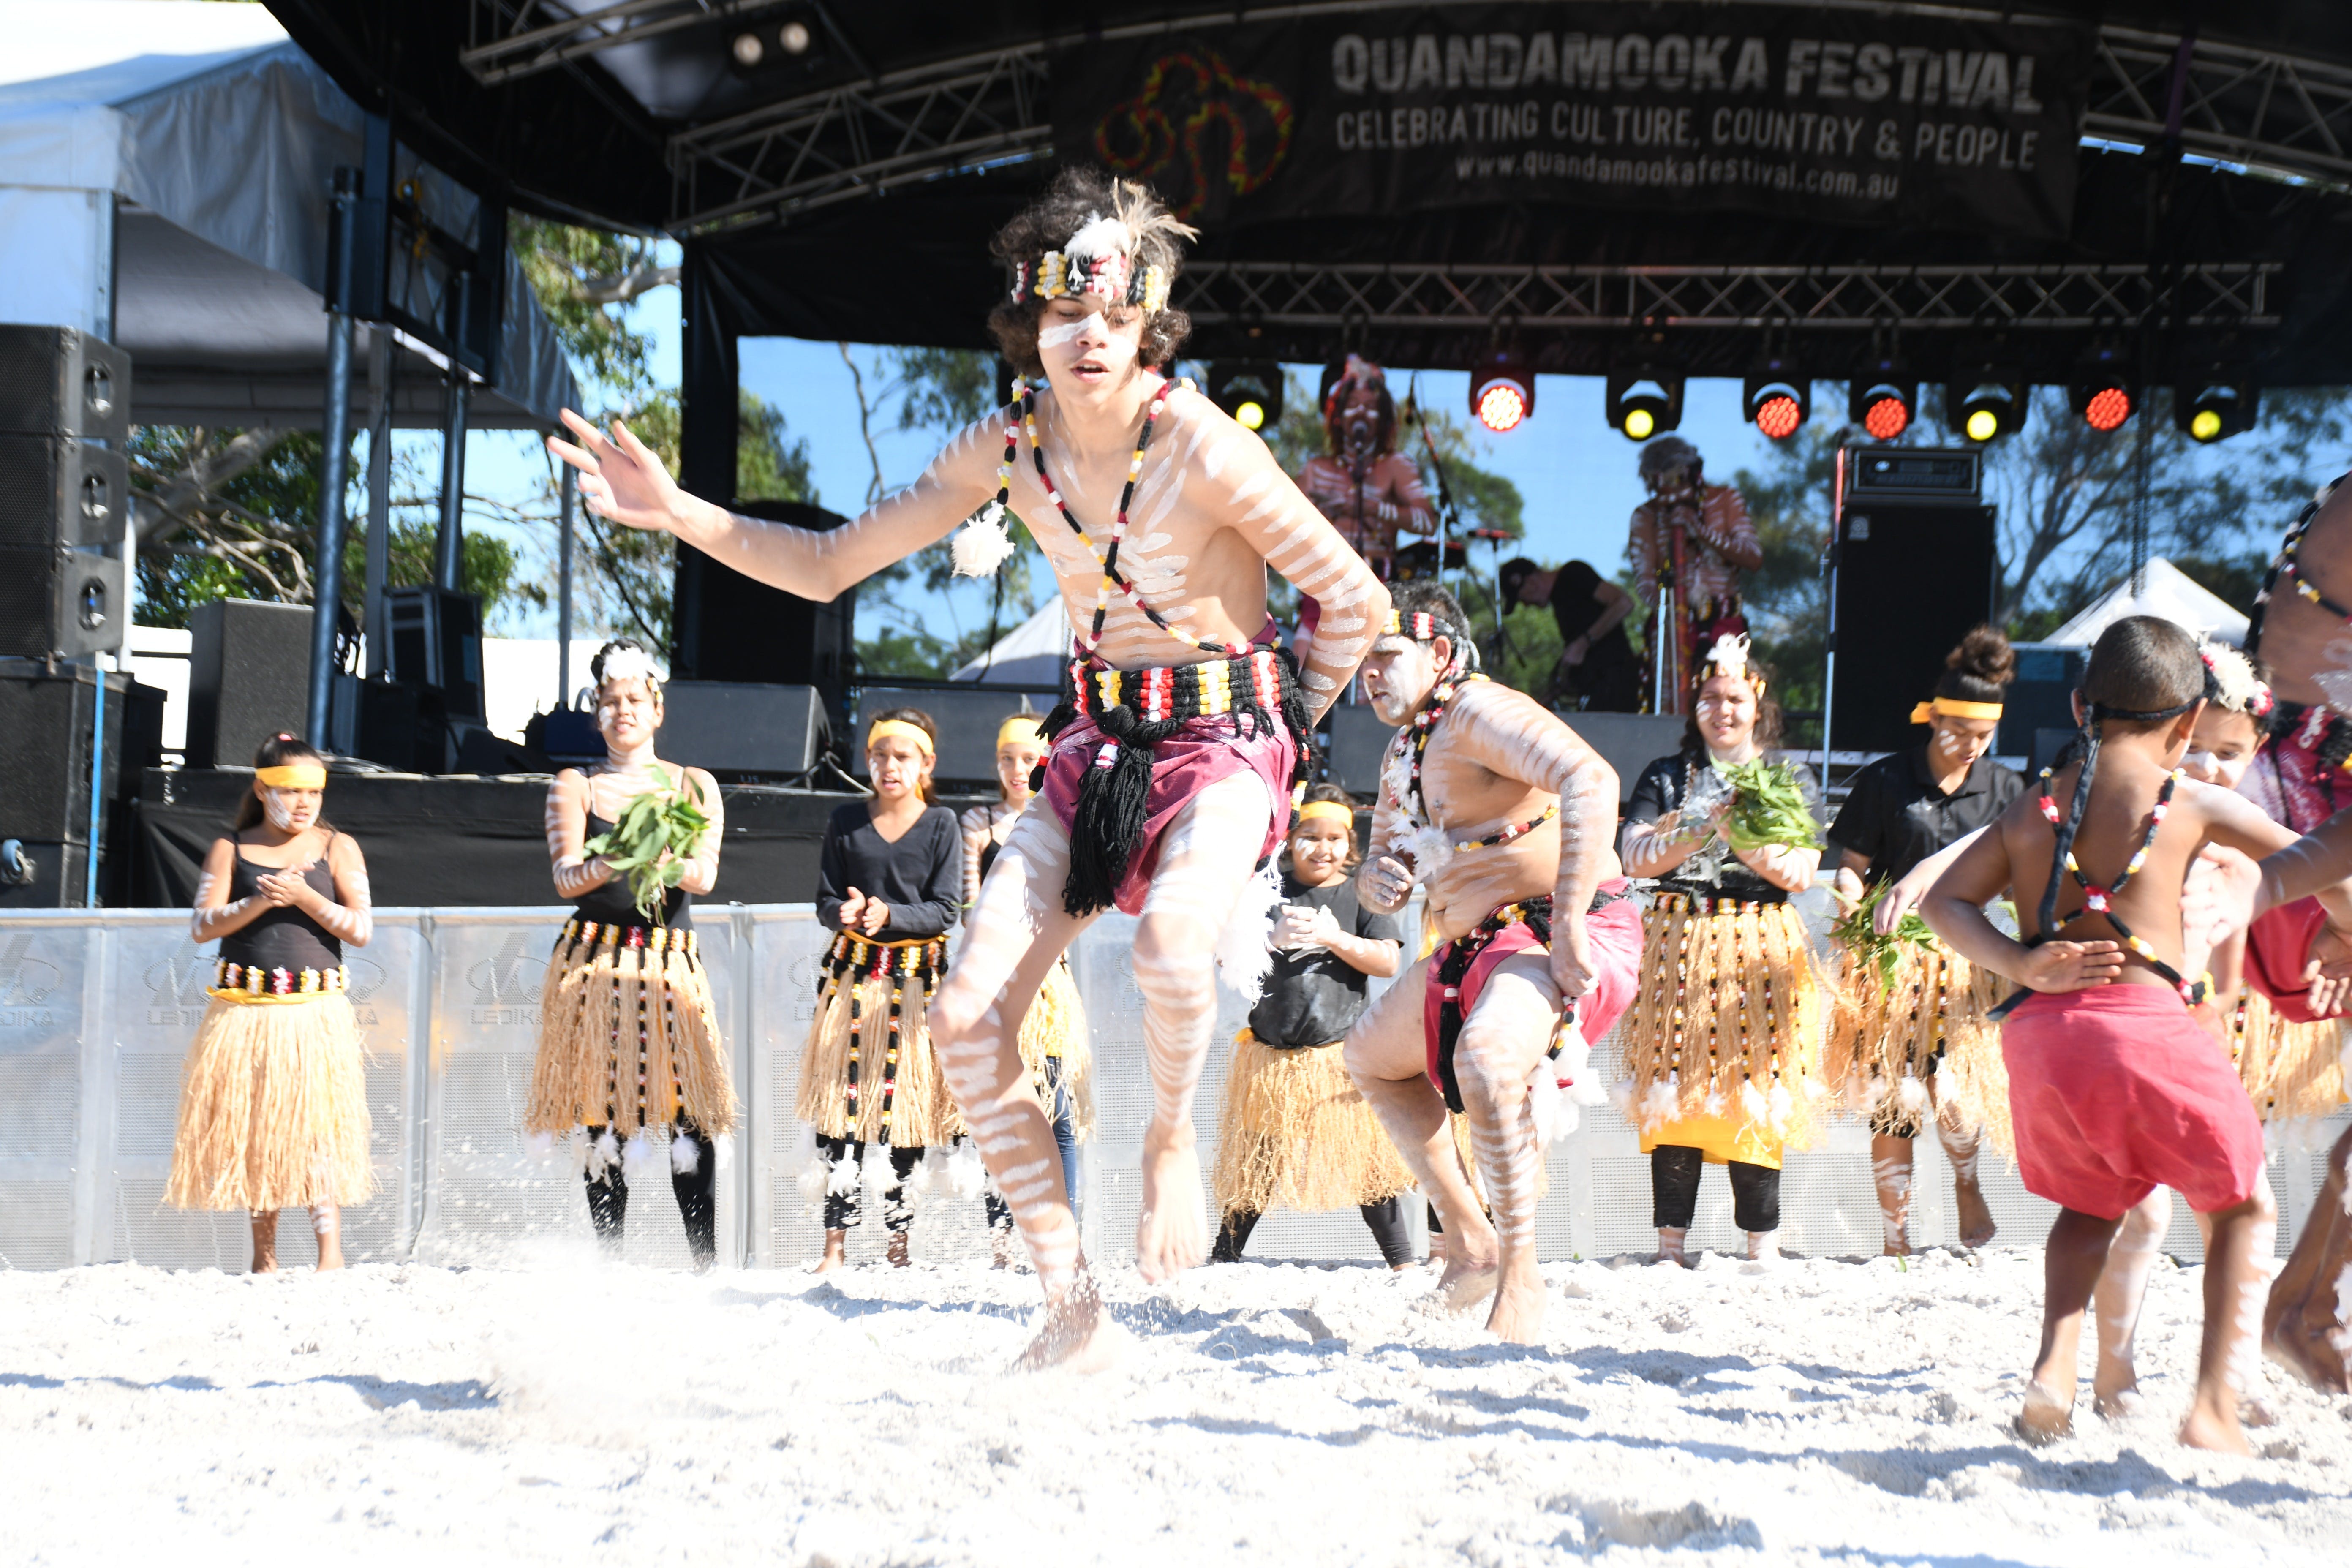 Quandamooka Festival 2021 - eAccommodation